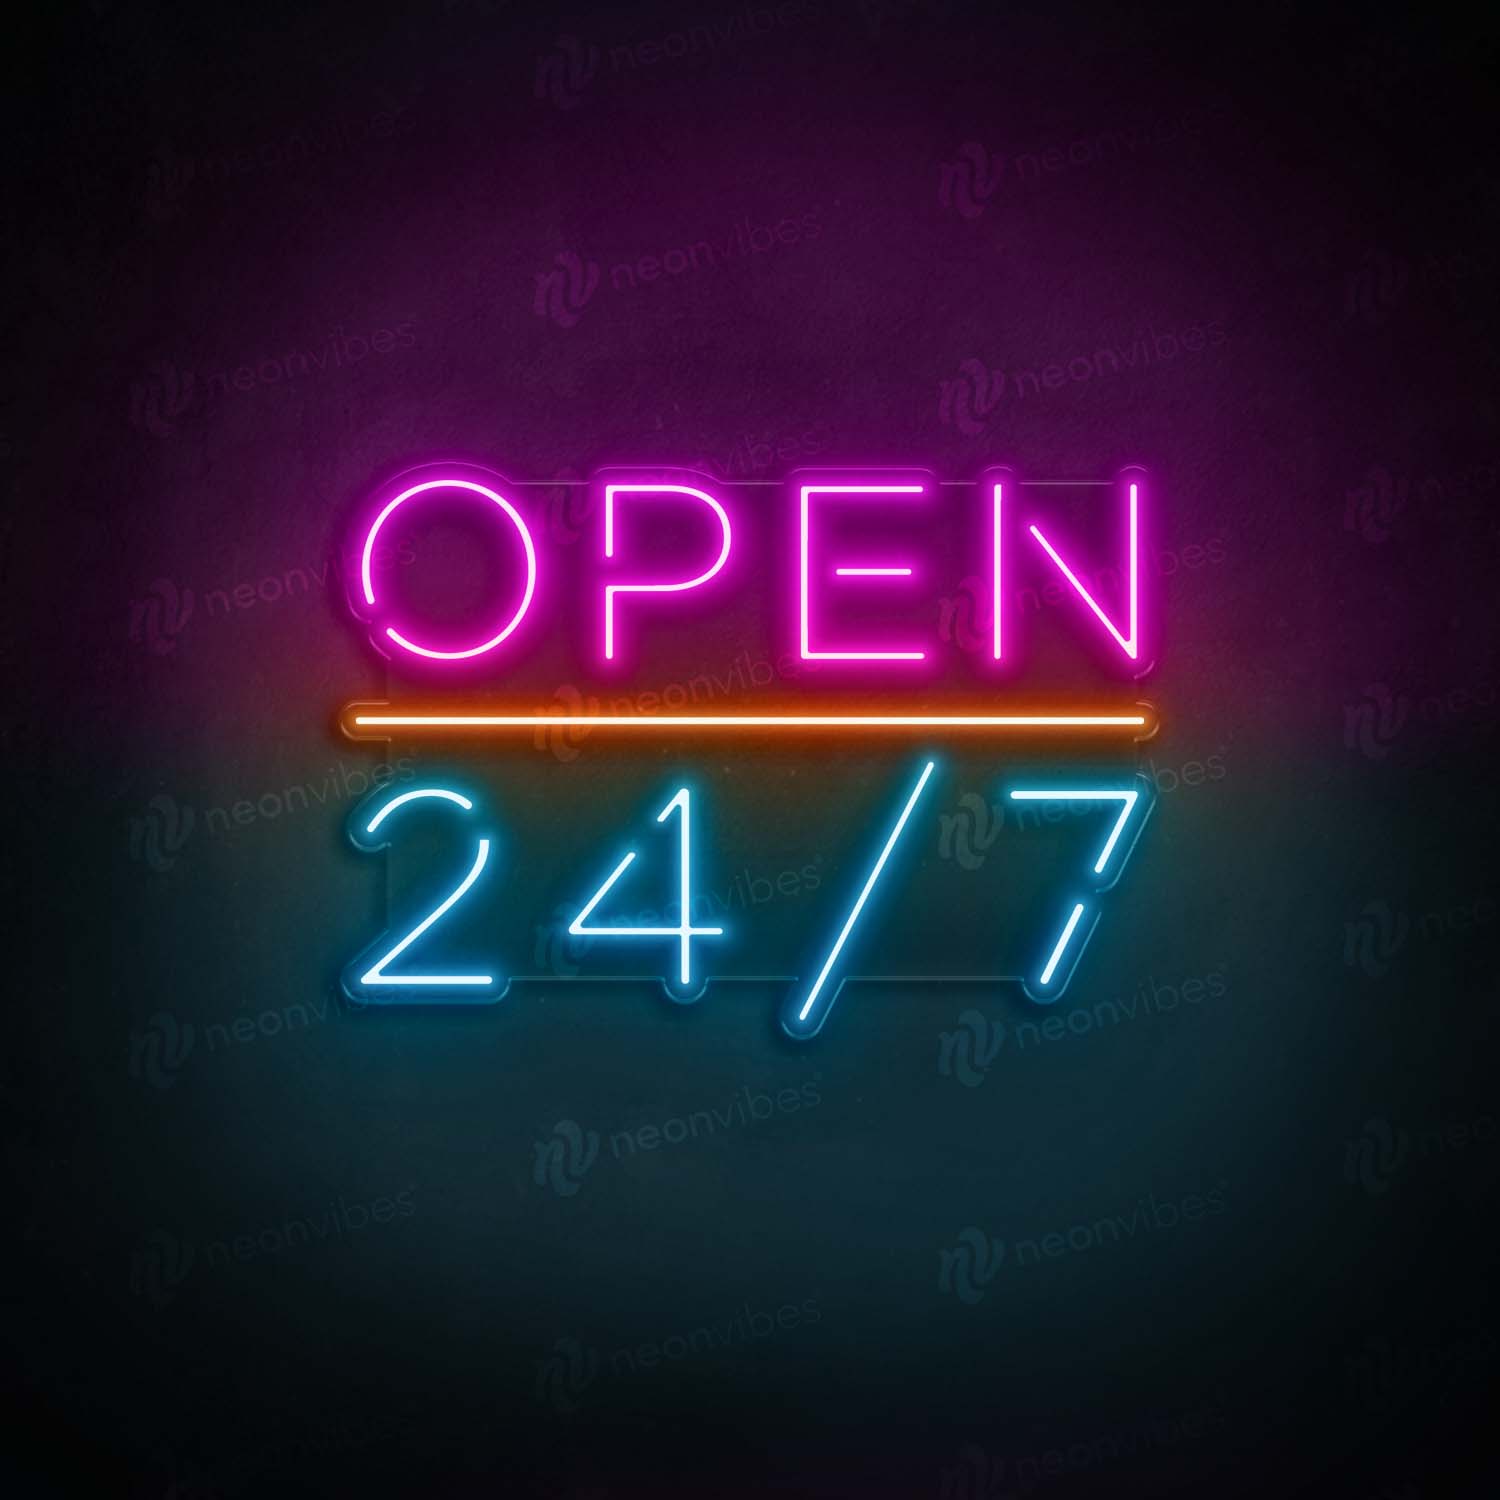 Open 24/7 neon sign